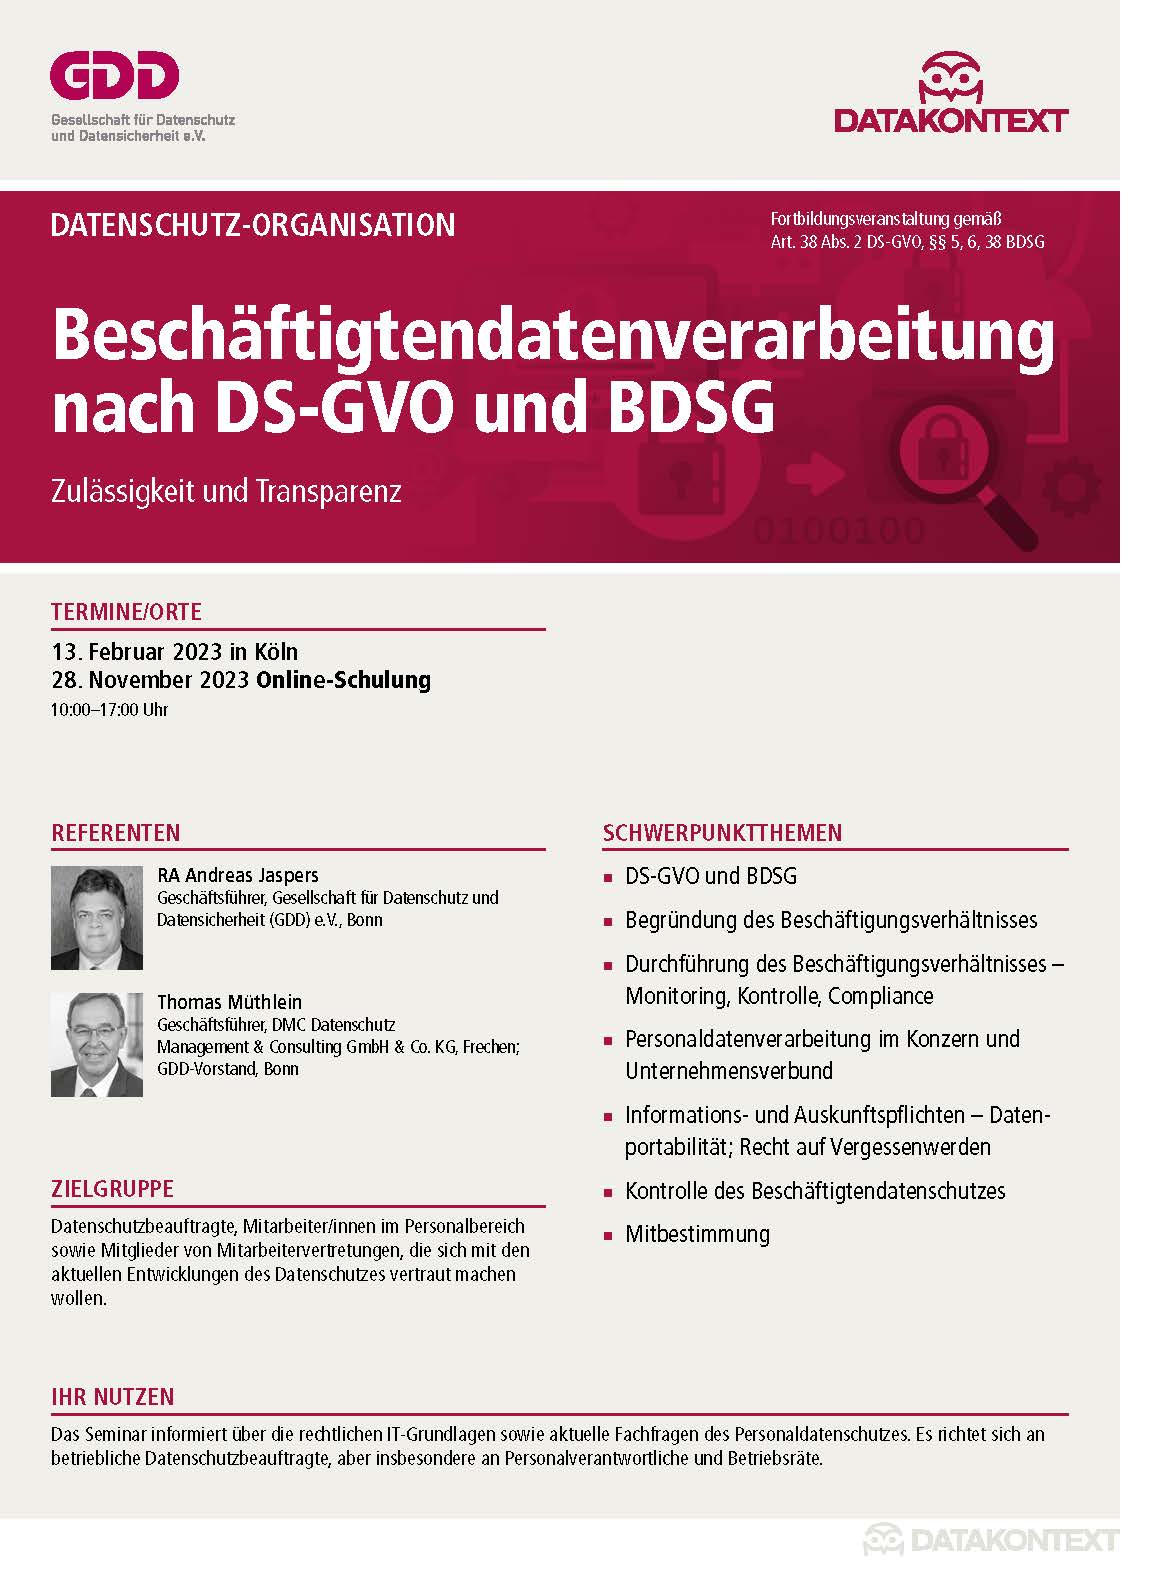 Beschäftigtendatenverarbeitung nach DS-GVO und BDSG